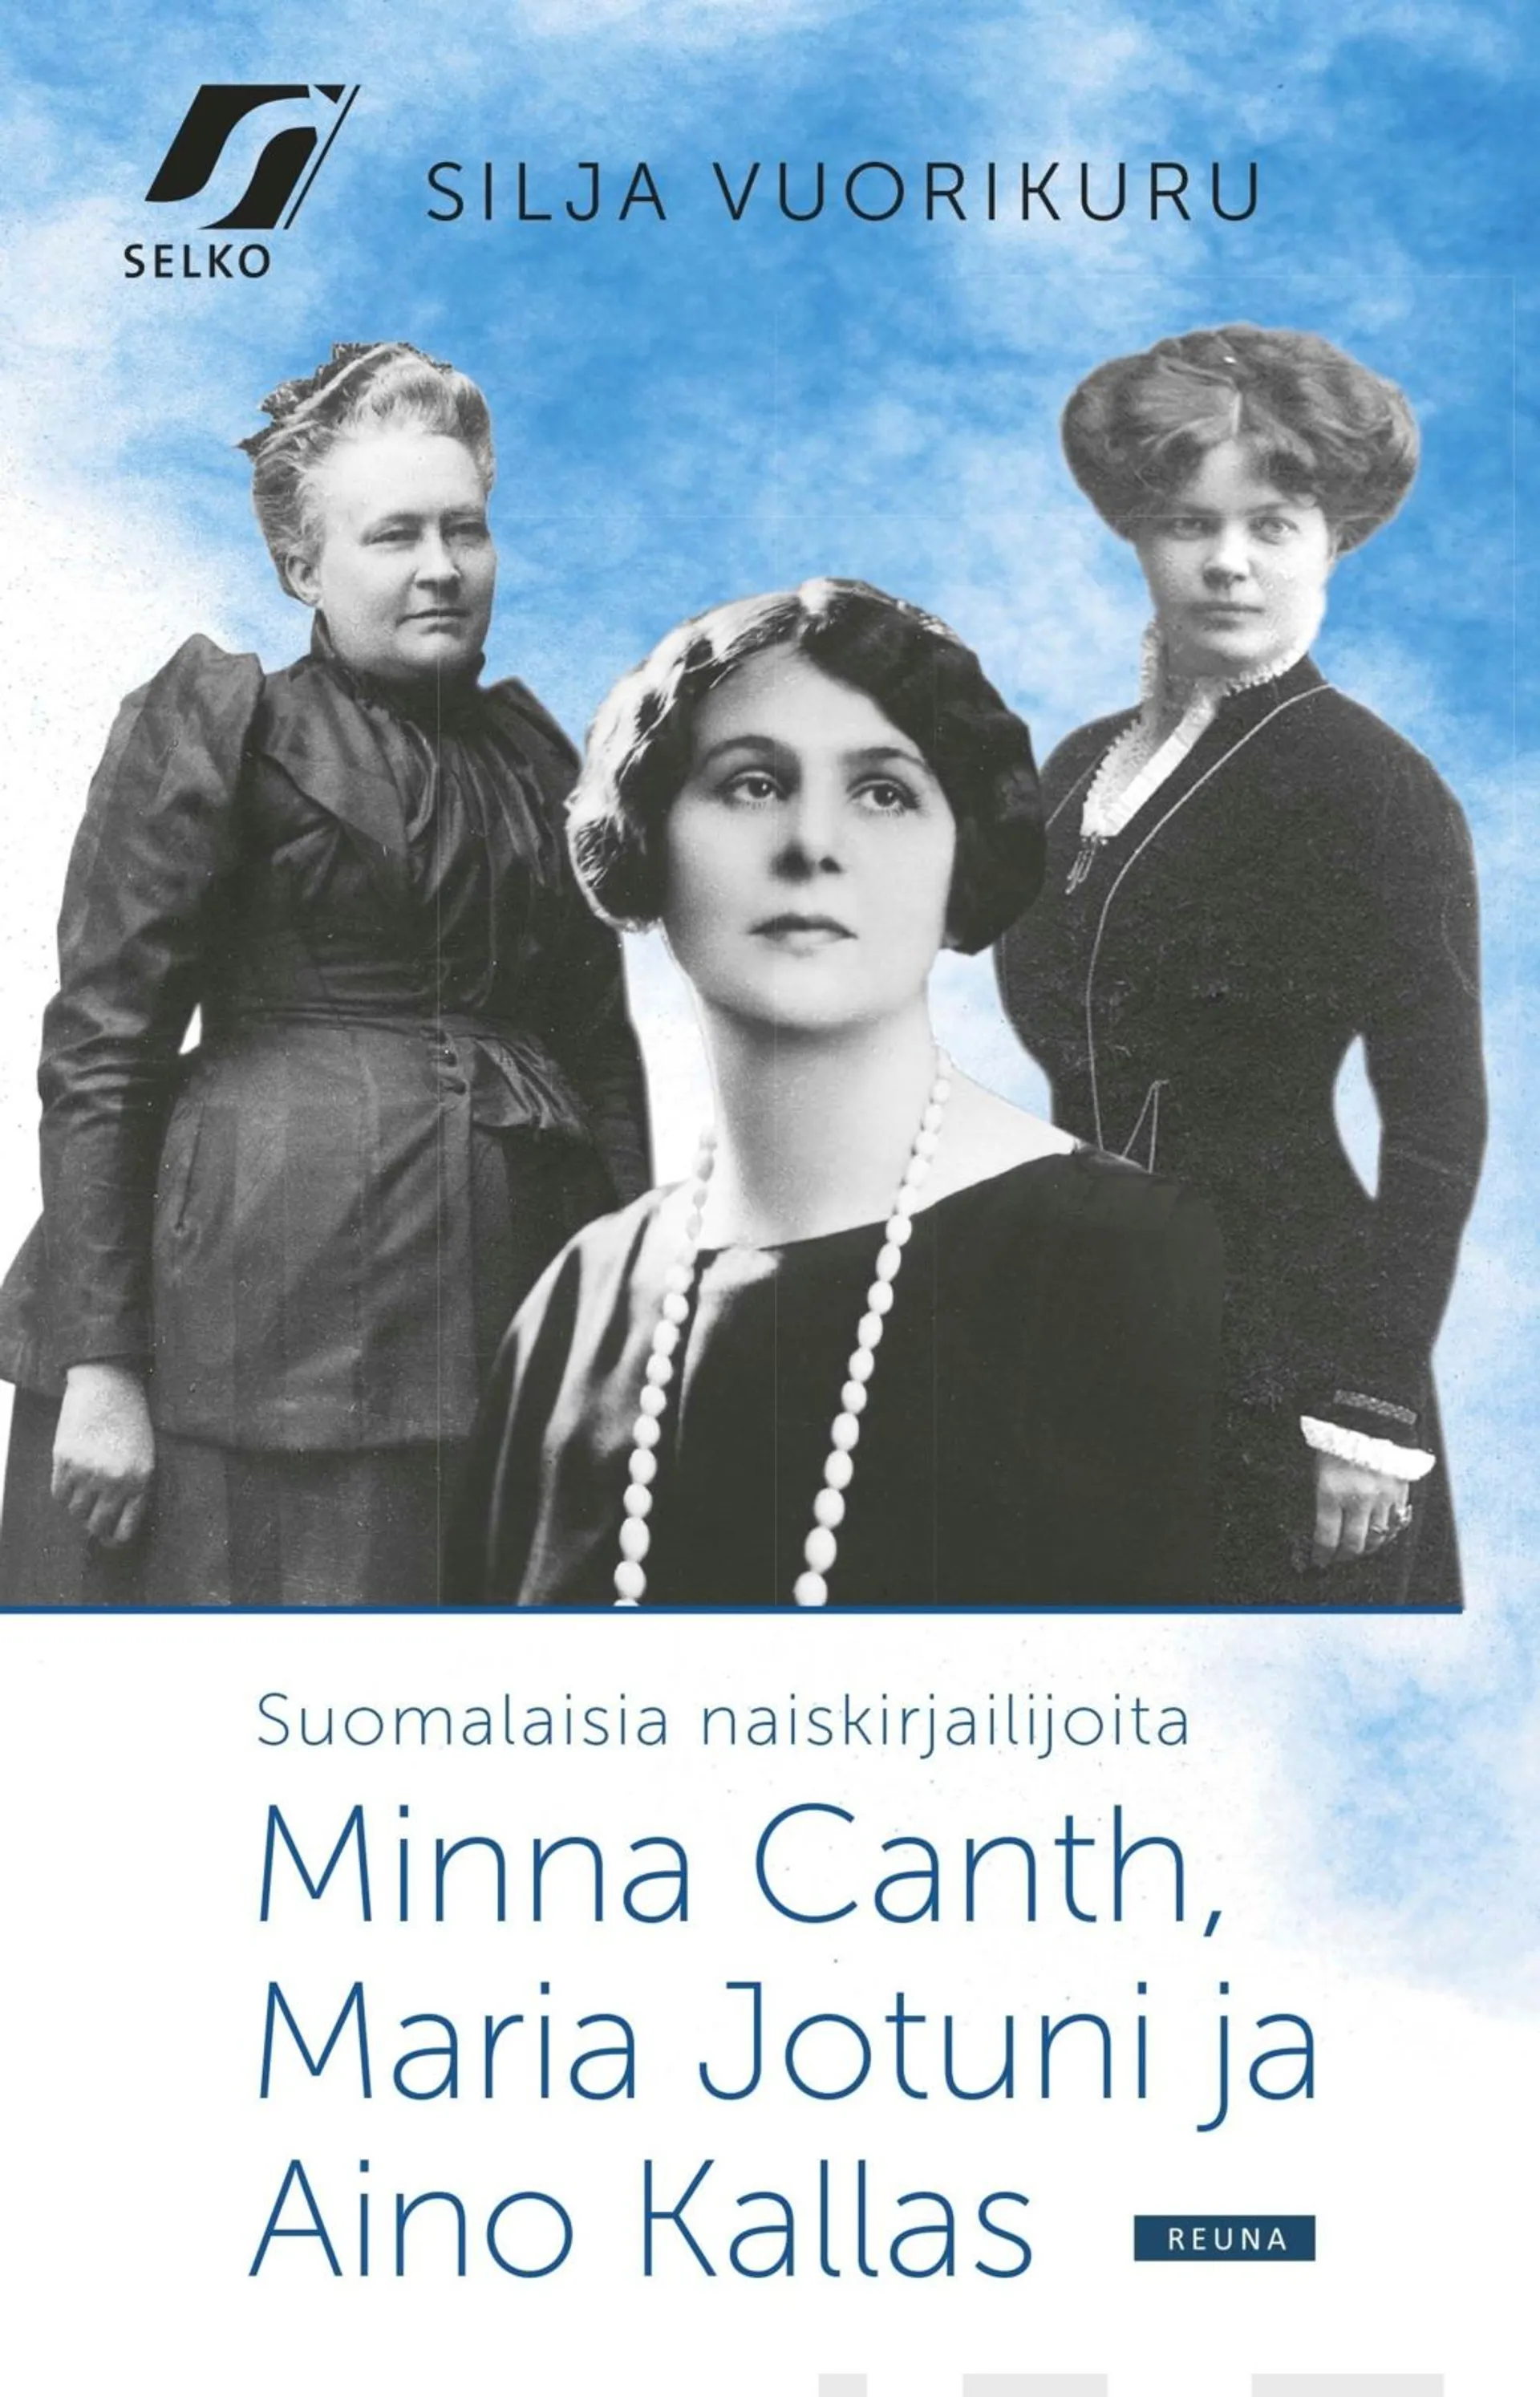 Vuorikuru, Suomalaisia naiskirjailijoita - Minna Canth, Maria Jotuni ja Aino Kallas